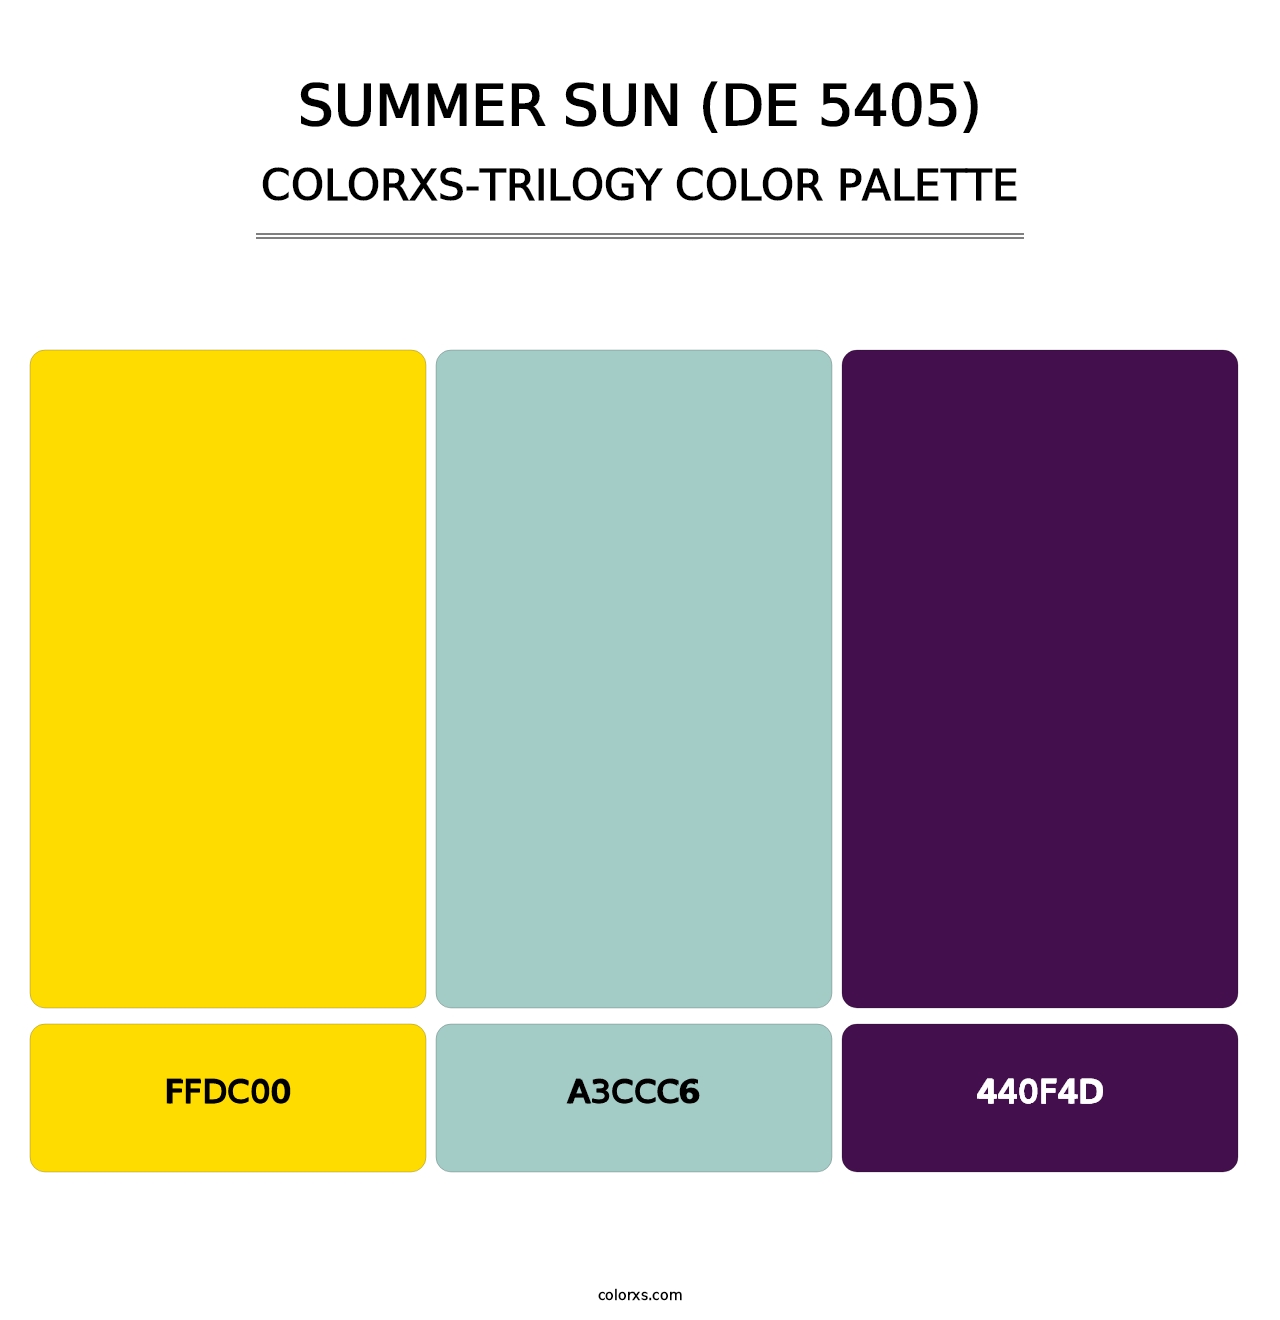 Summer Sun (DE 5405) - Colorxs Trilogy Palette